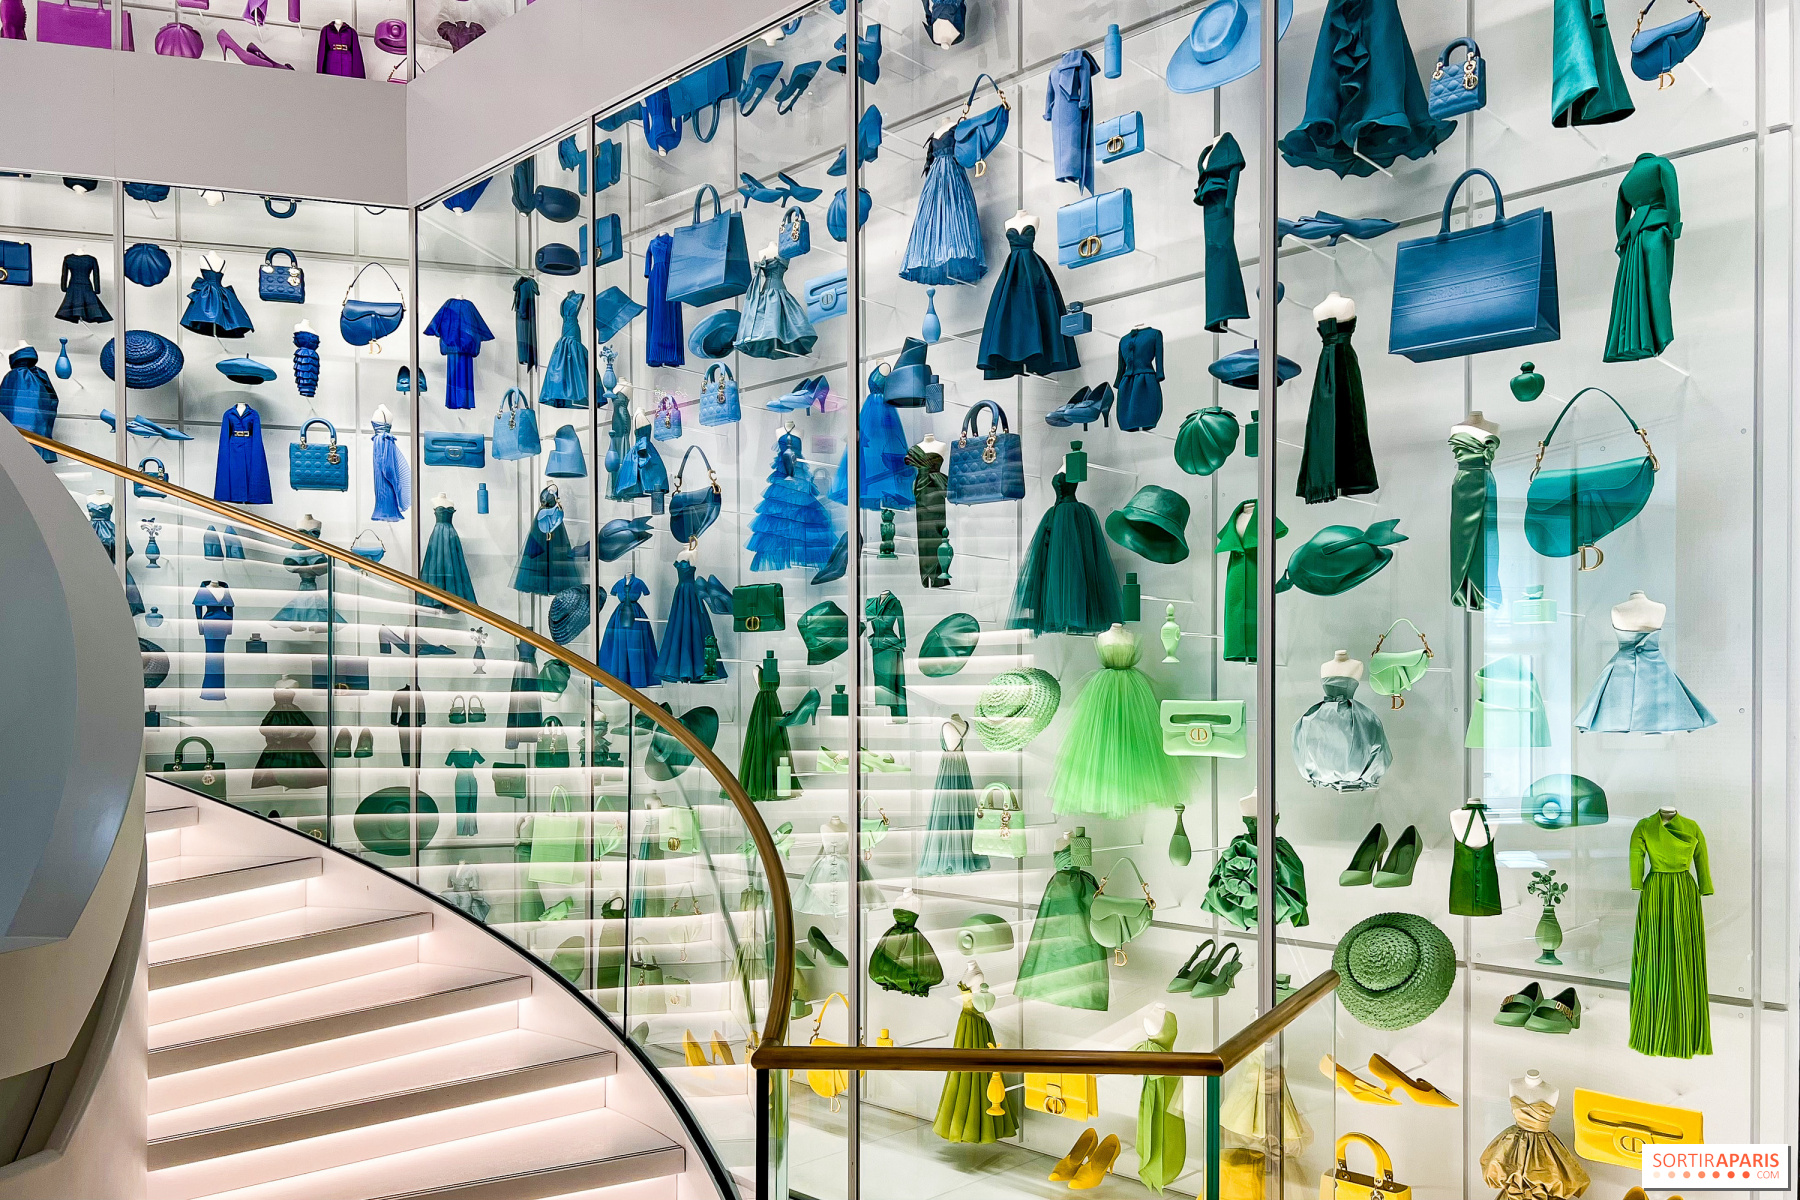 La Galerie: Dior inaugura museu de moda em Paris com peças